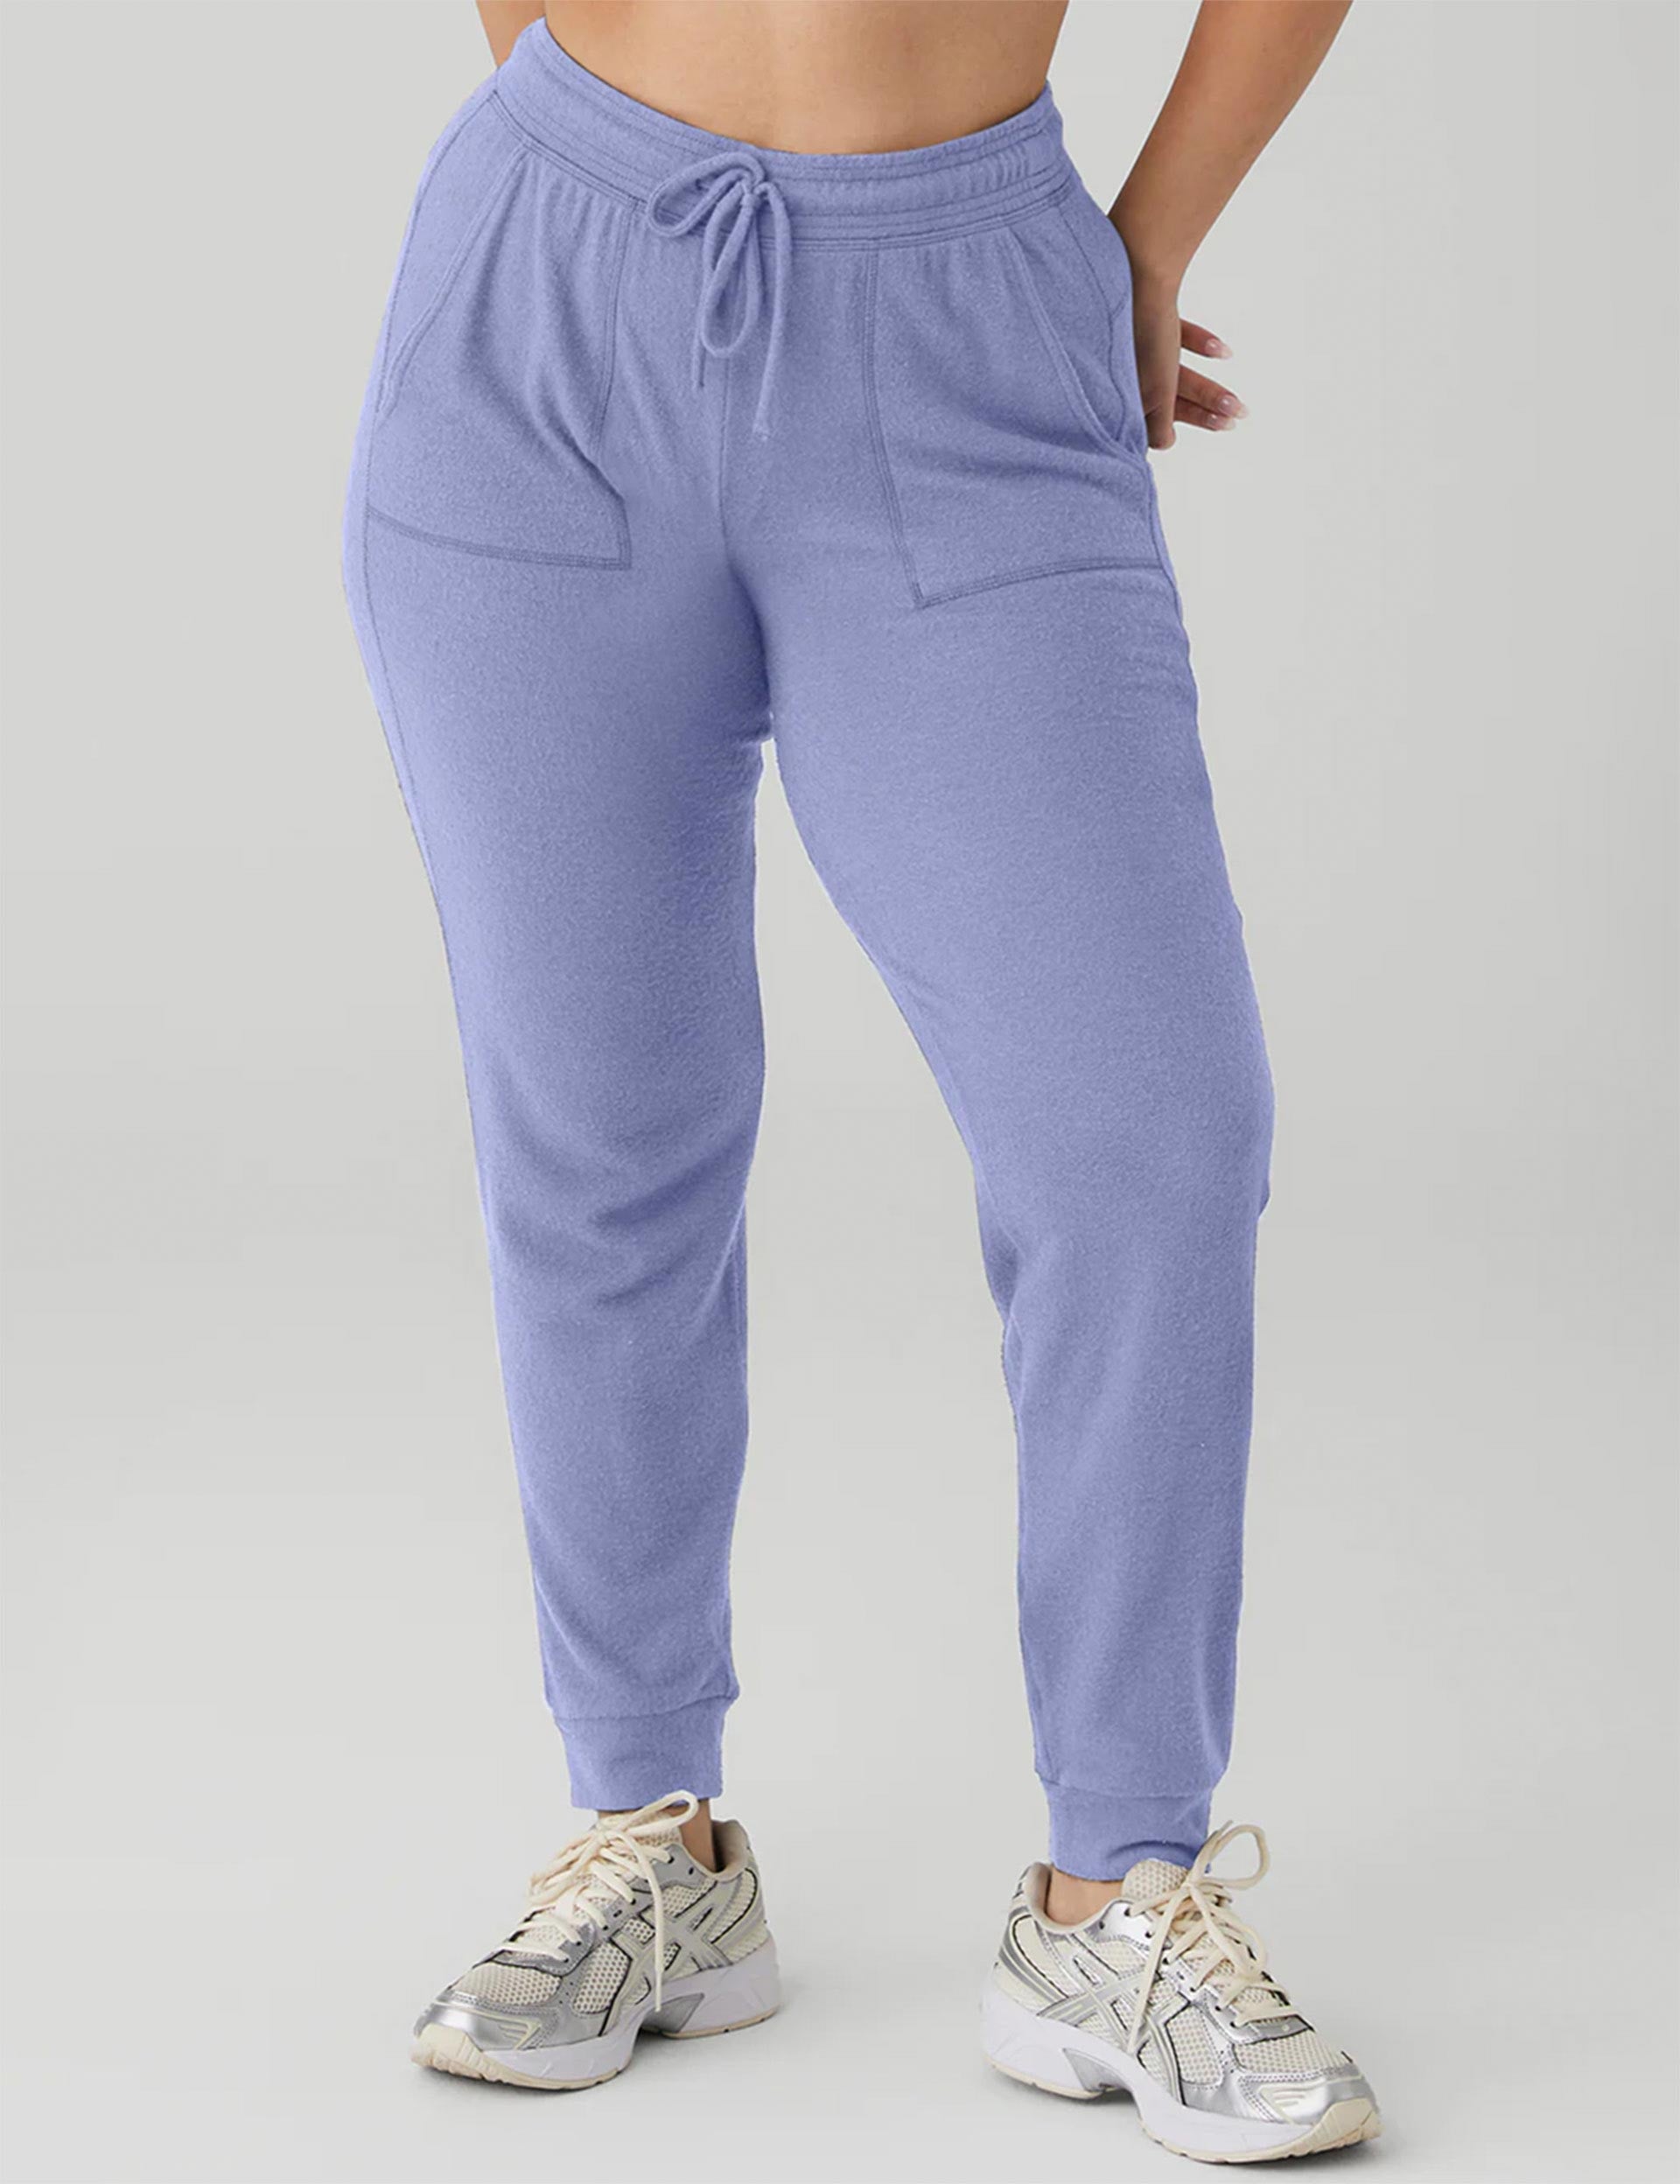 Alo Yoga Soho Sweatshirt & Soho Jogger Pants